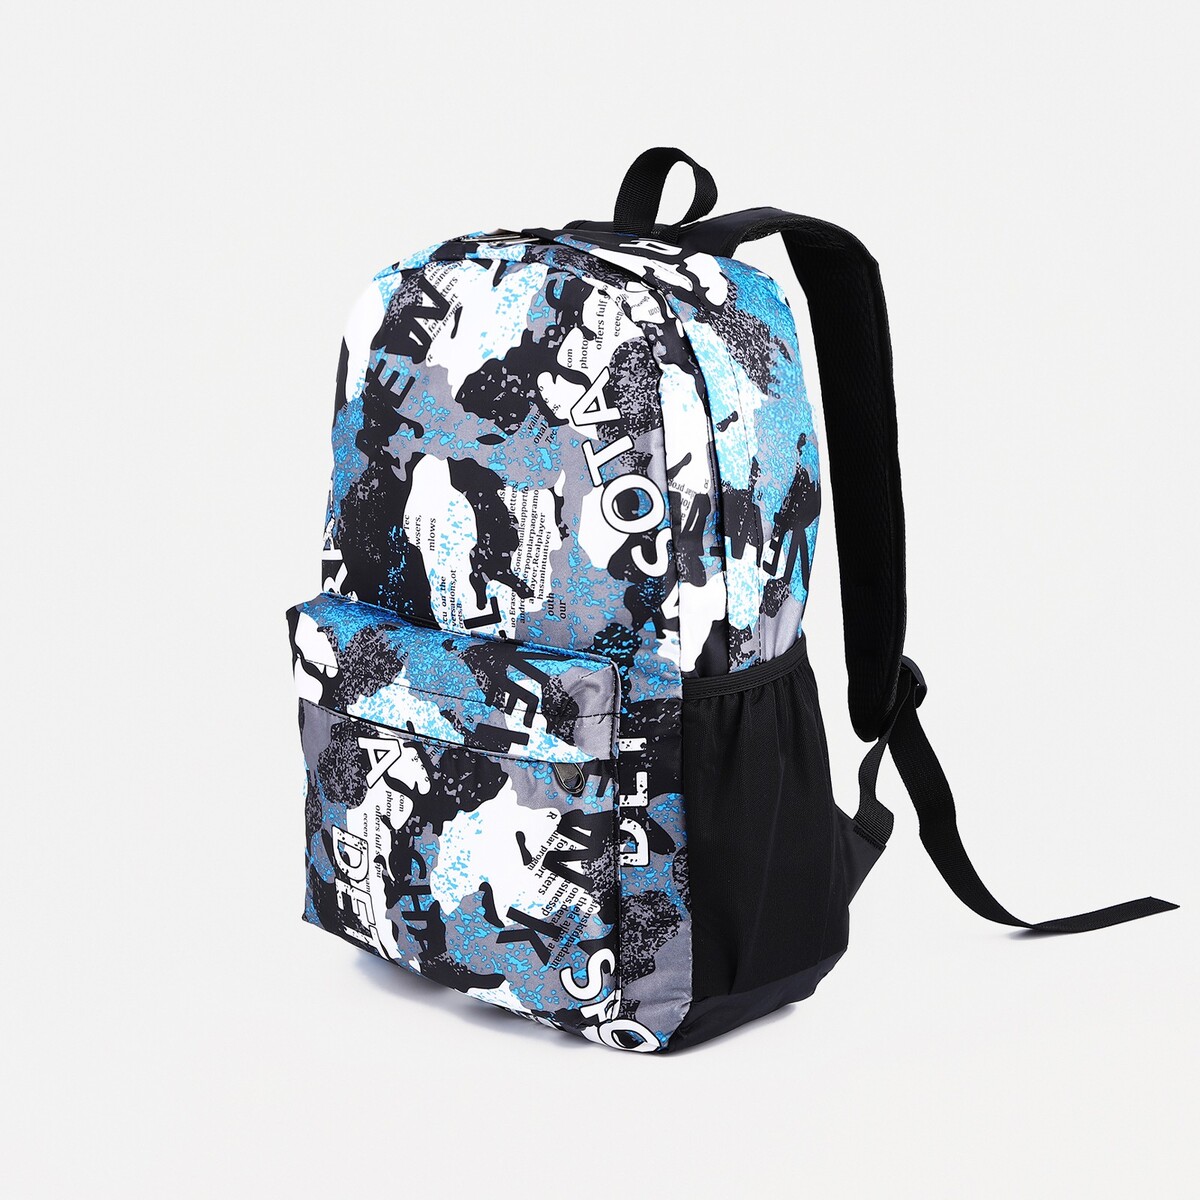 Рюкзак молодежный из текстиля, 3 кармана, цвет голубой/серый